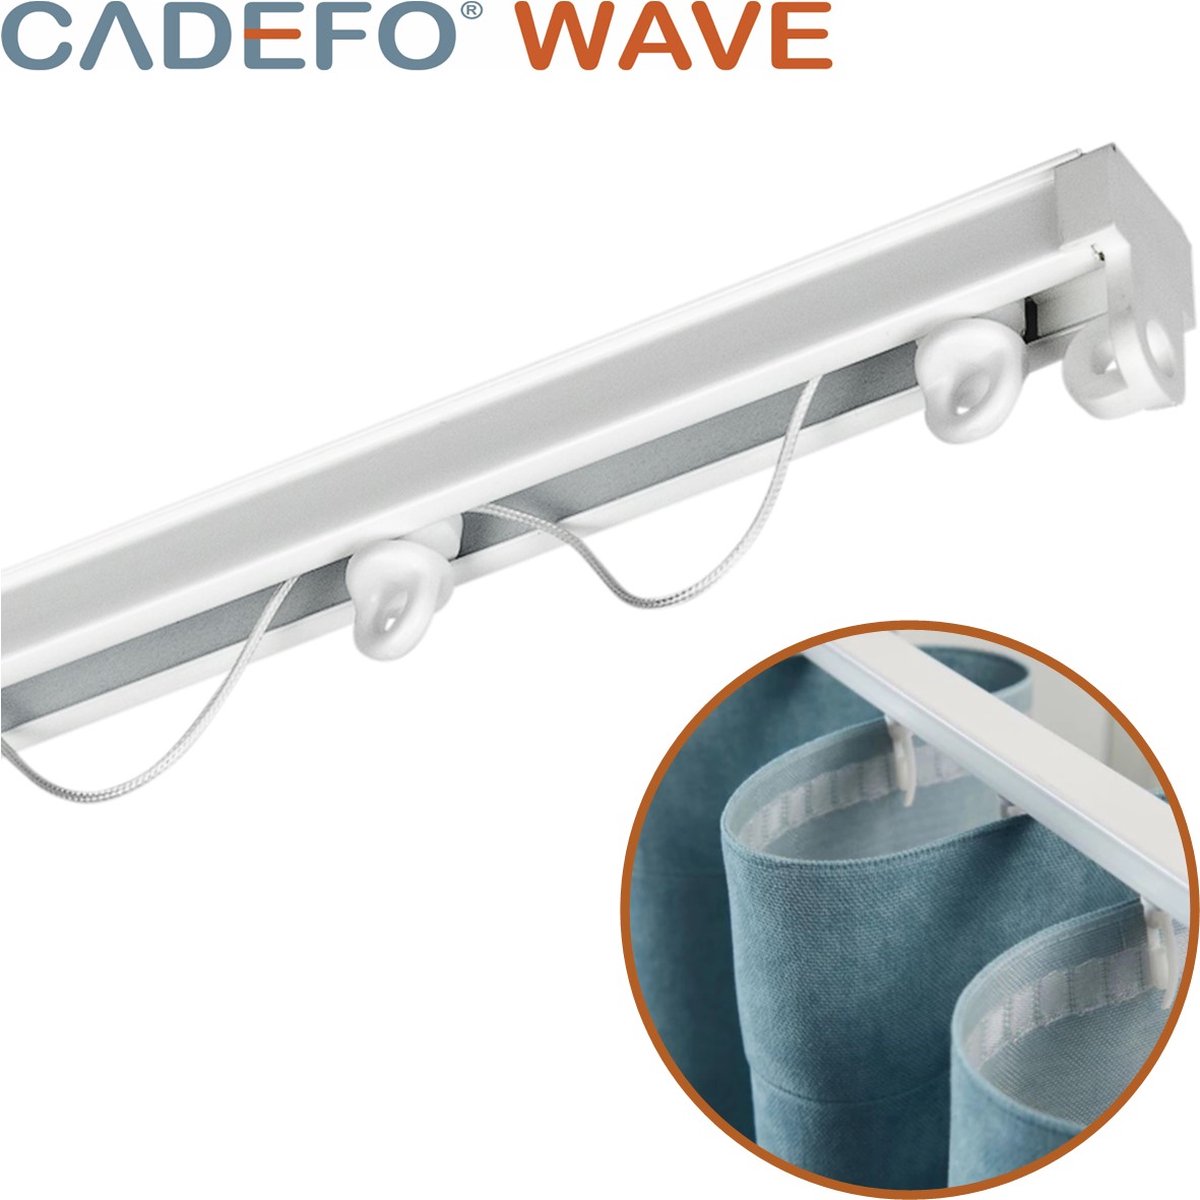 CADEFO WAVE (151 - 200 cm) Gordijnrails - Compleet op maat! - UIT 1 STUK - Leverbaar tot 6 meter - Plafondbevestiging - Lengte 178 cm